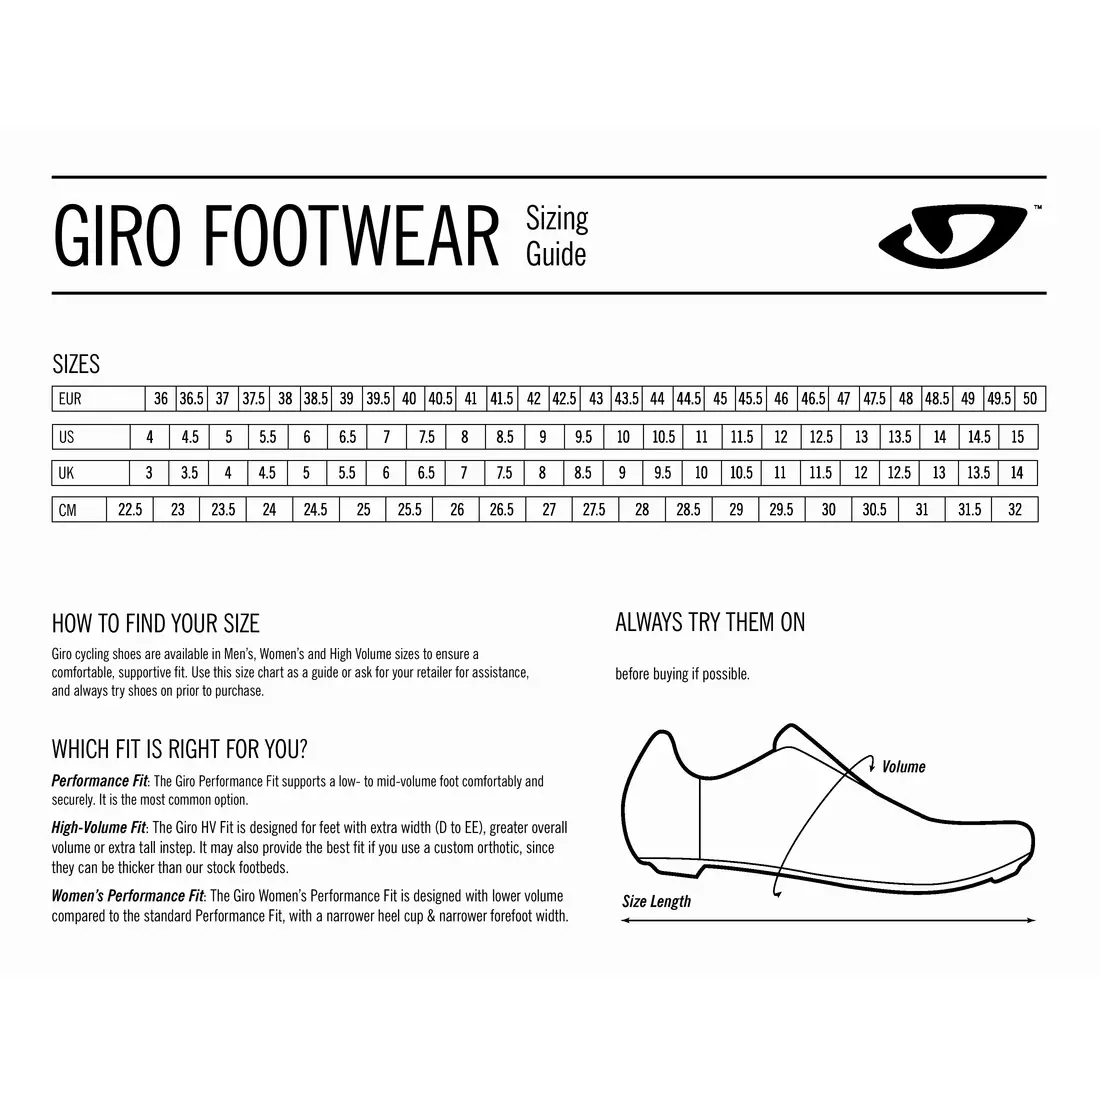 GIRO dámska cyklistická obuv stylus w white GR-7123034